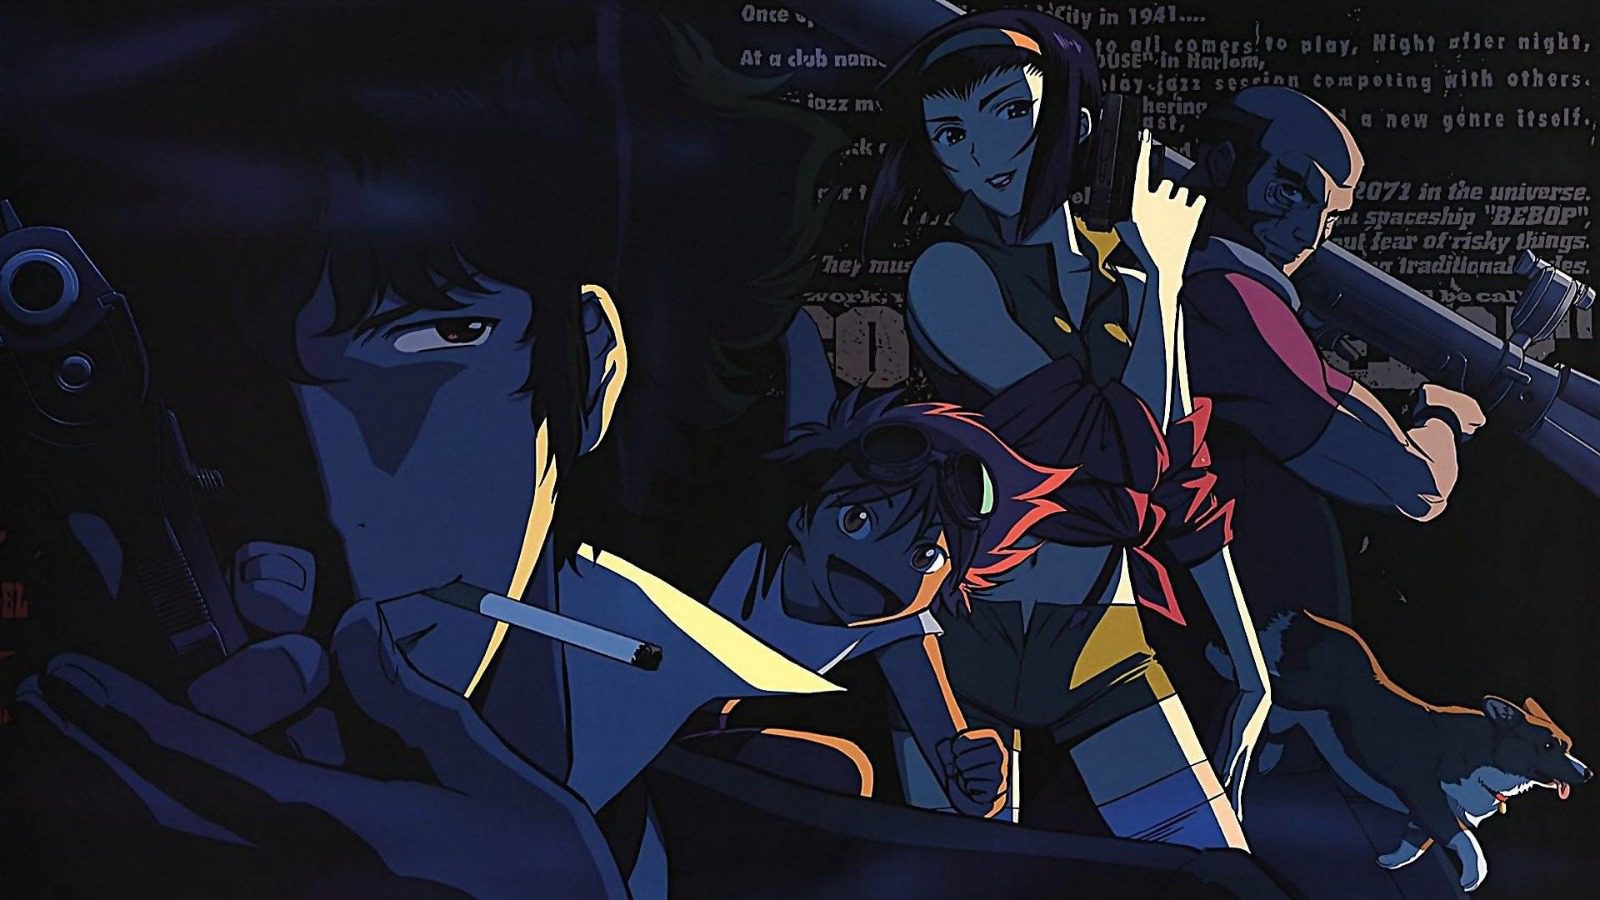 John Wick + Cowboy Bebop + Attack on Titan = O novo sucesso do anime para  ver em streaming